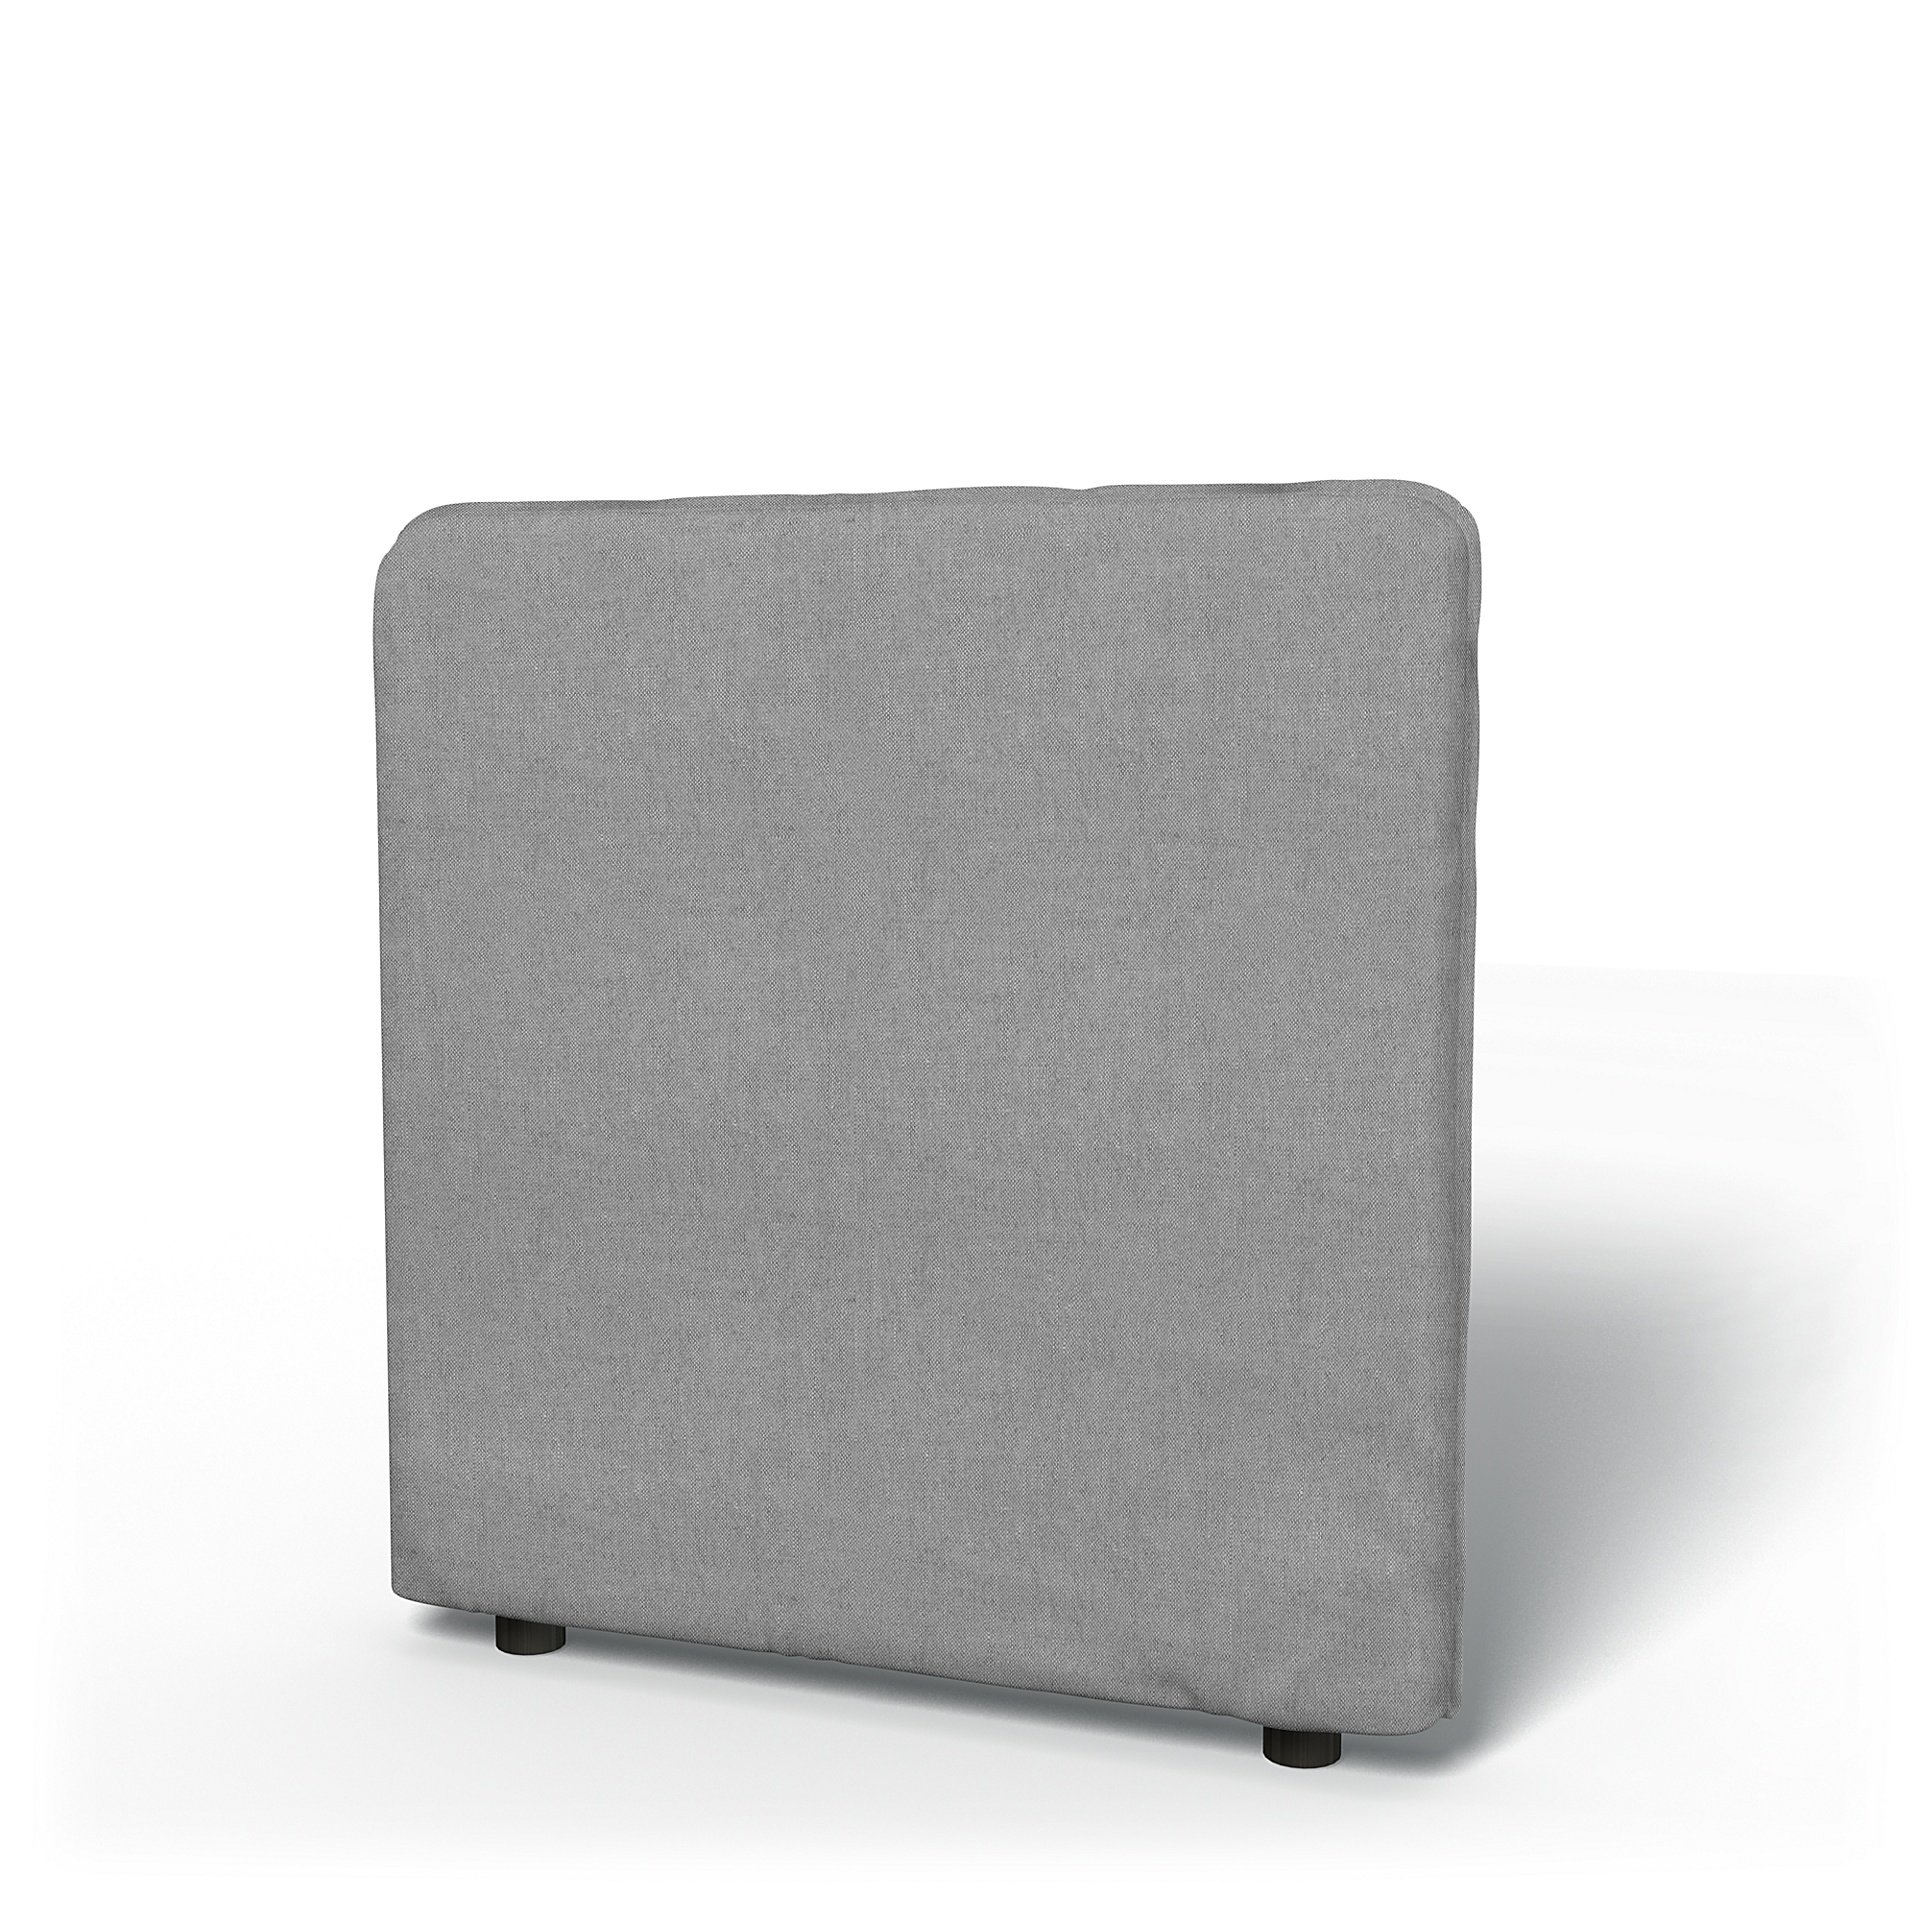 IKEA - Vallentuna Low Backrest Cover 80x80cm 32x32in, Graphite, Linen - Bemz